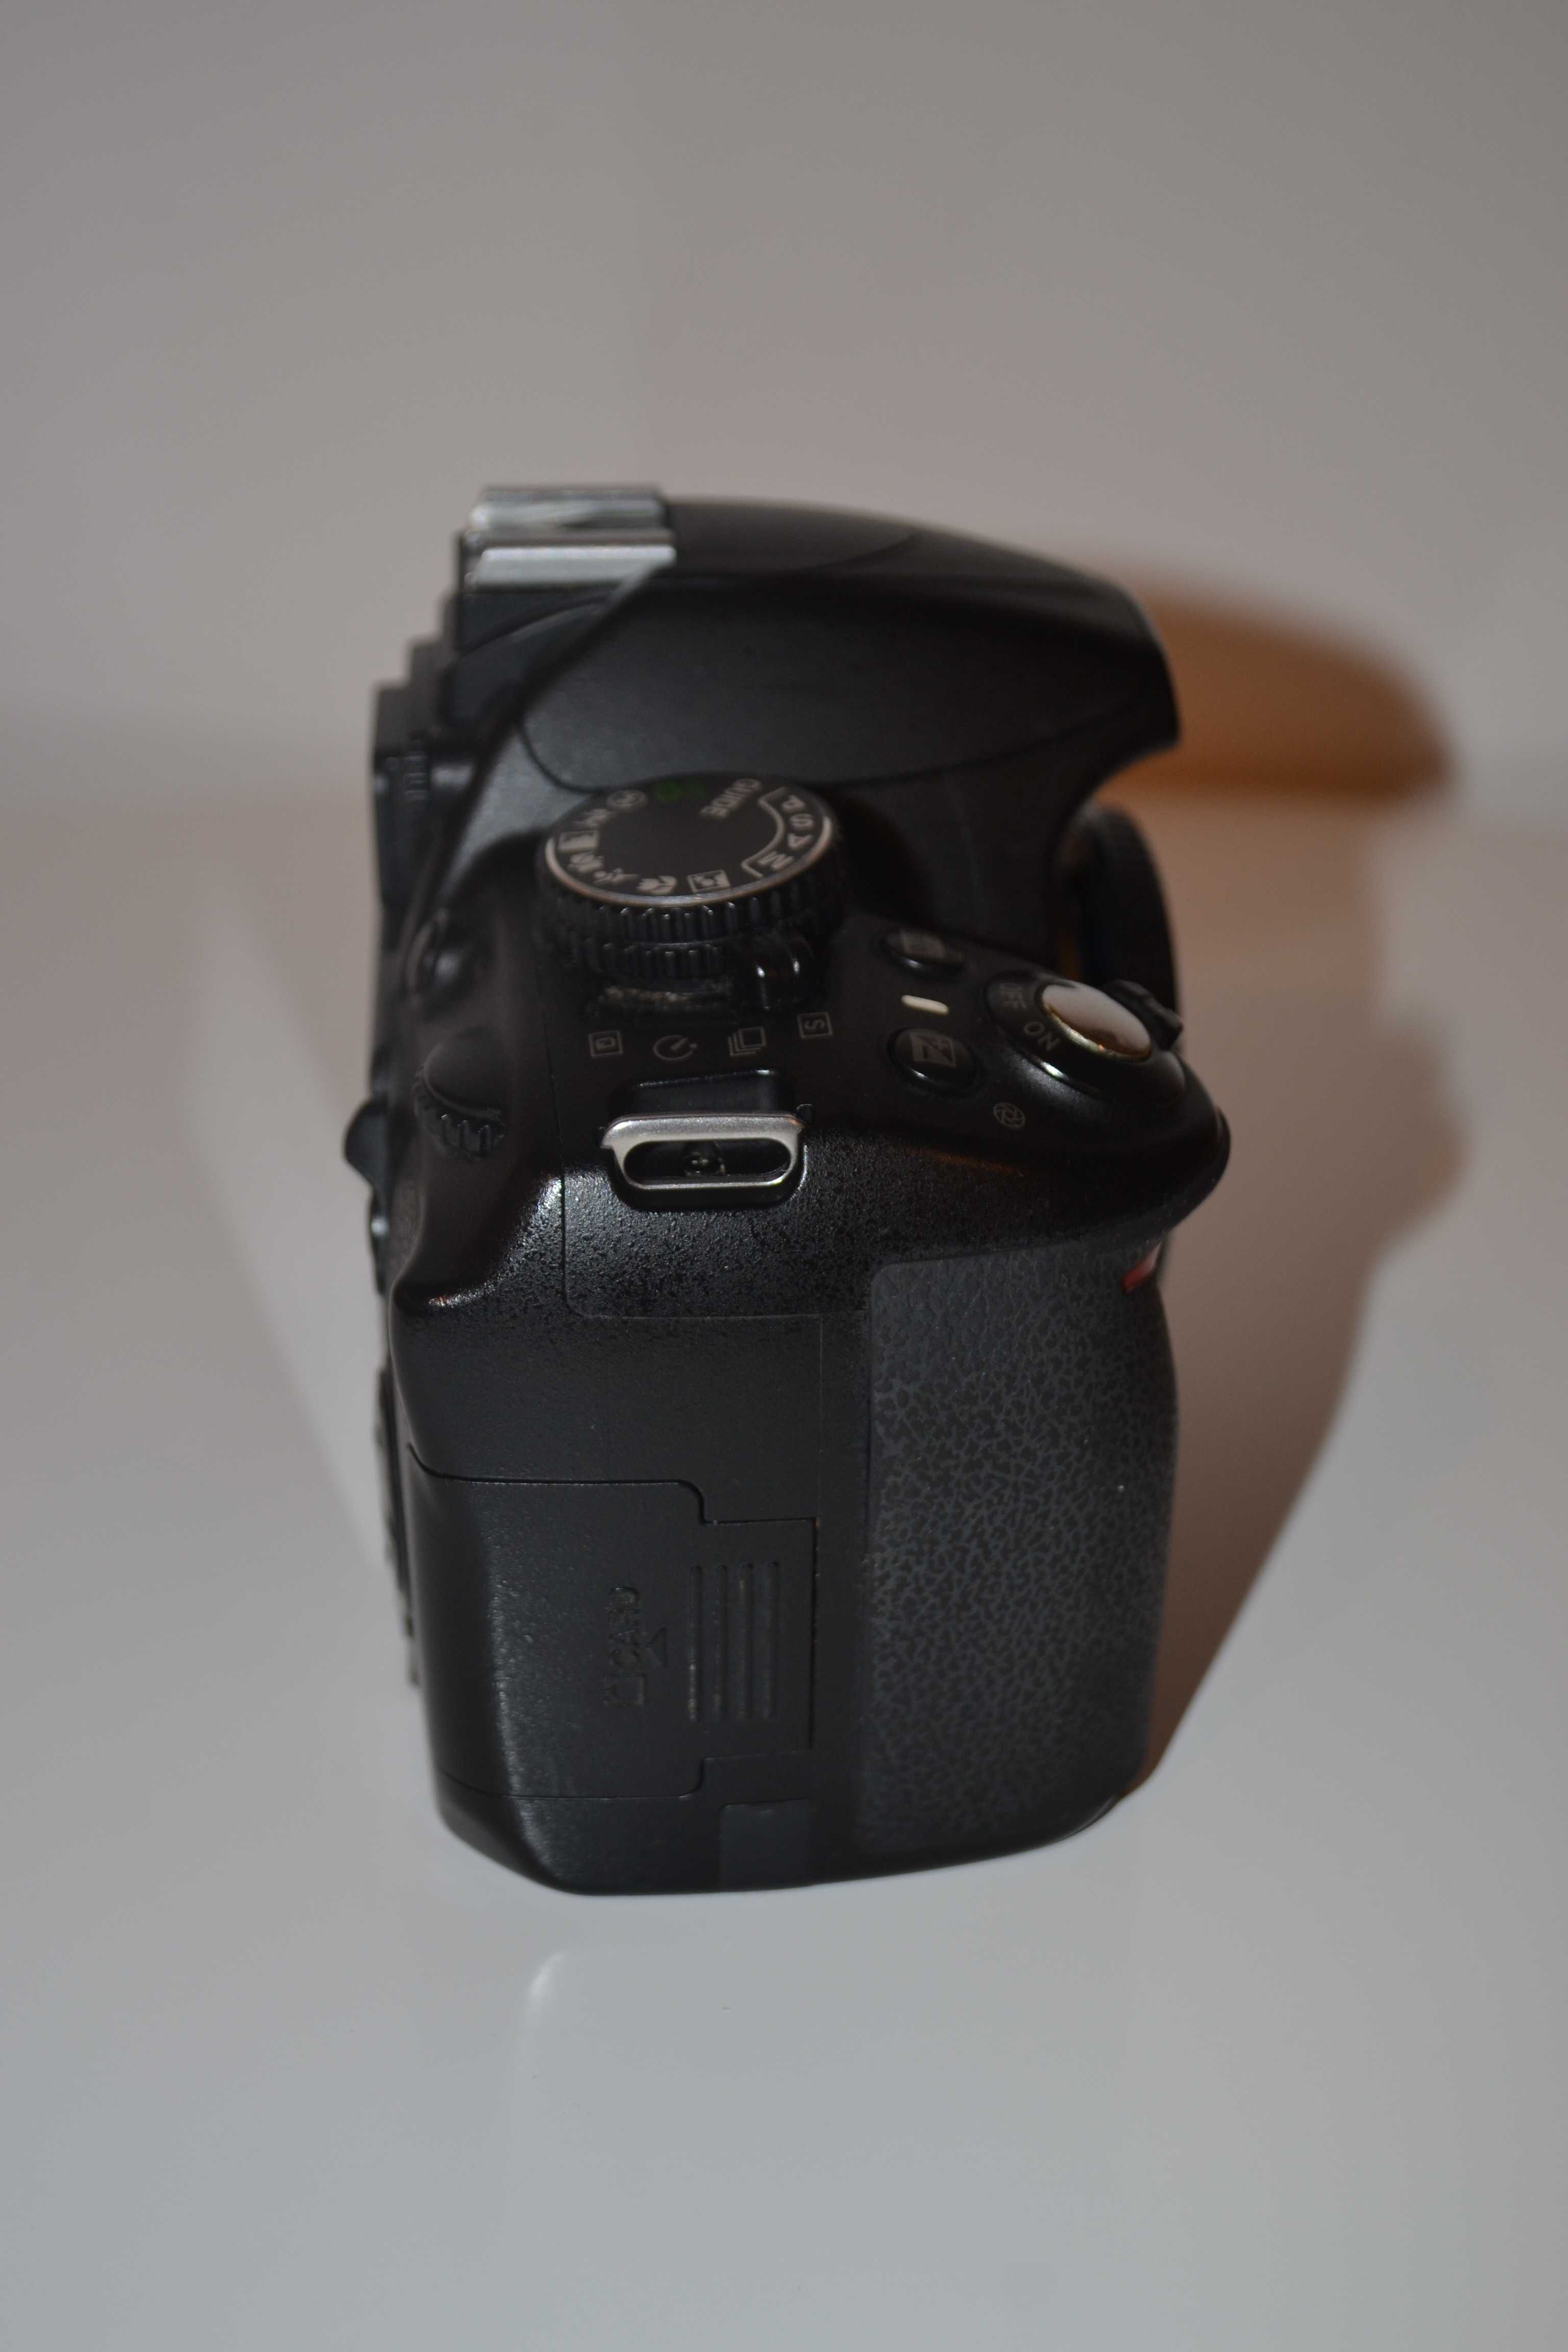 Nikon D3100 body aparat lustrzanka